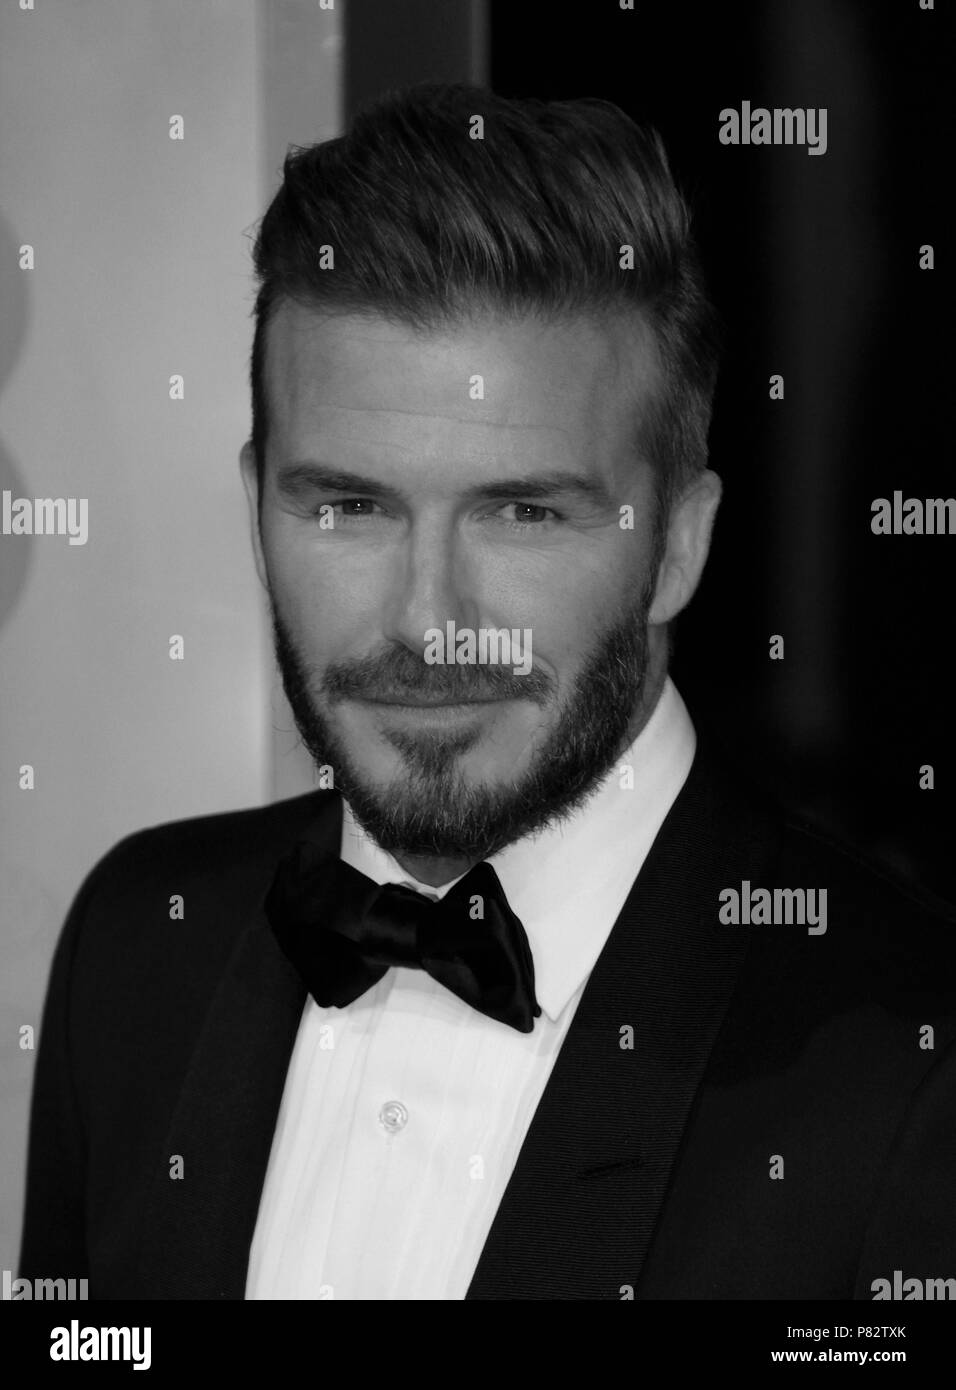 Londres - DEC 08, 2015 : ( Image ) monochrome altérées à David Beckham assiste à l'EE British Academy Film Awards au Royal Opera House de Londres Banque D'Images